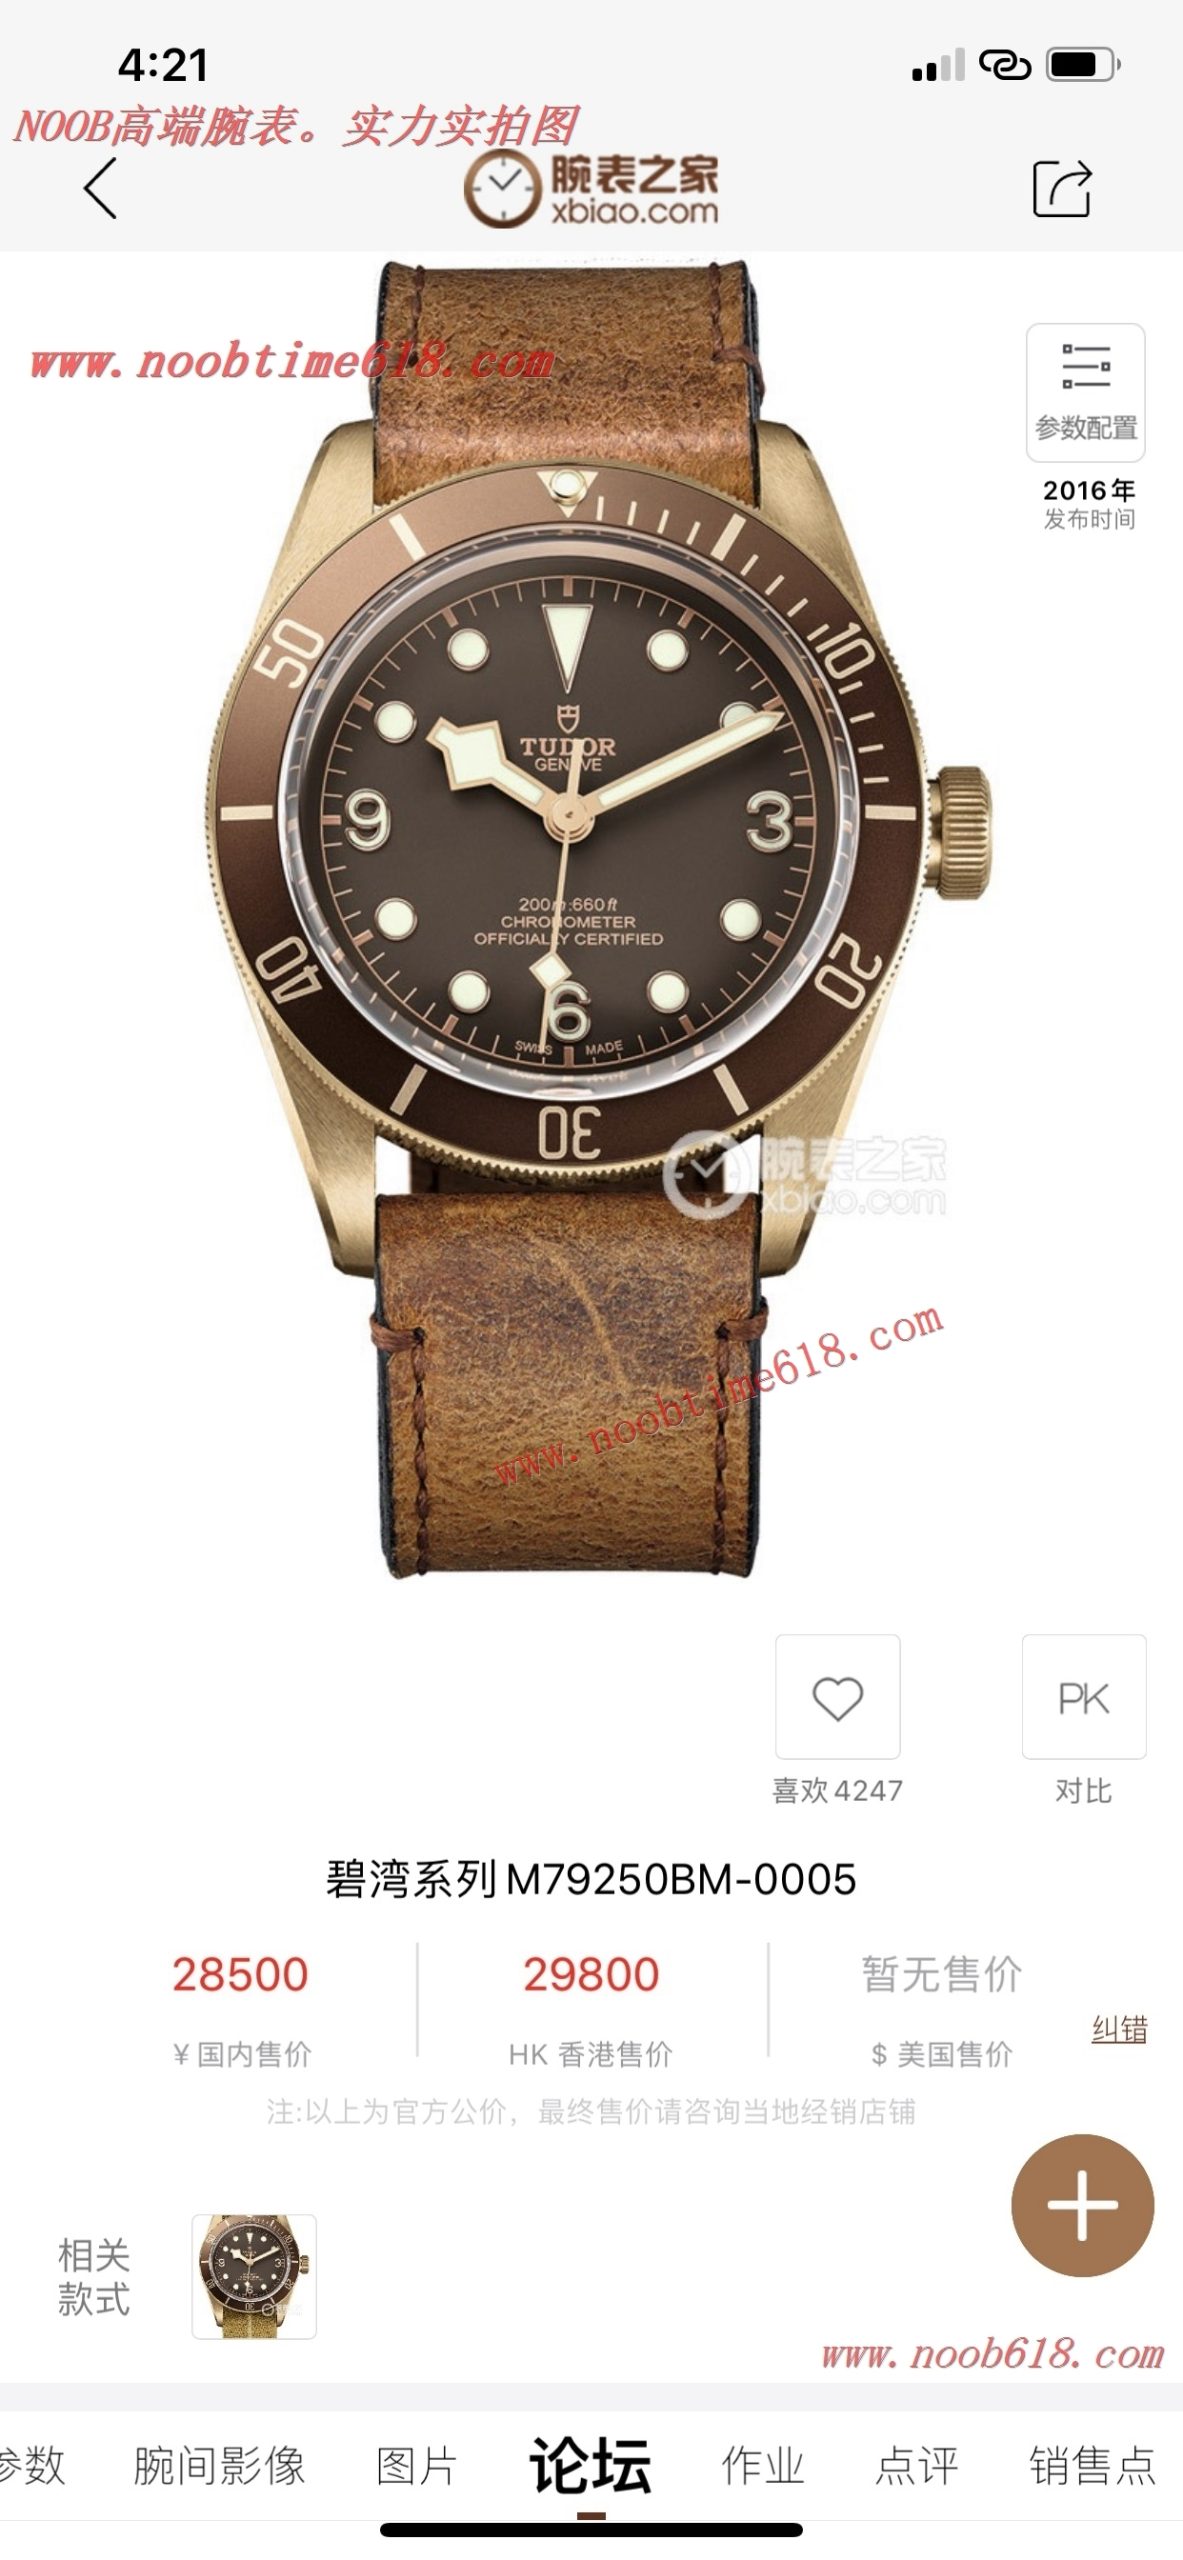 香港仿錶,臺灣仿錶,仿錶,N廠,複刻手錶,原單青銅殼帝舵仿錶